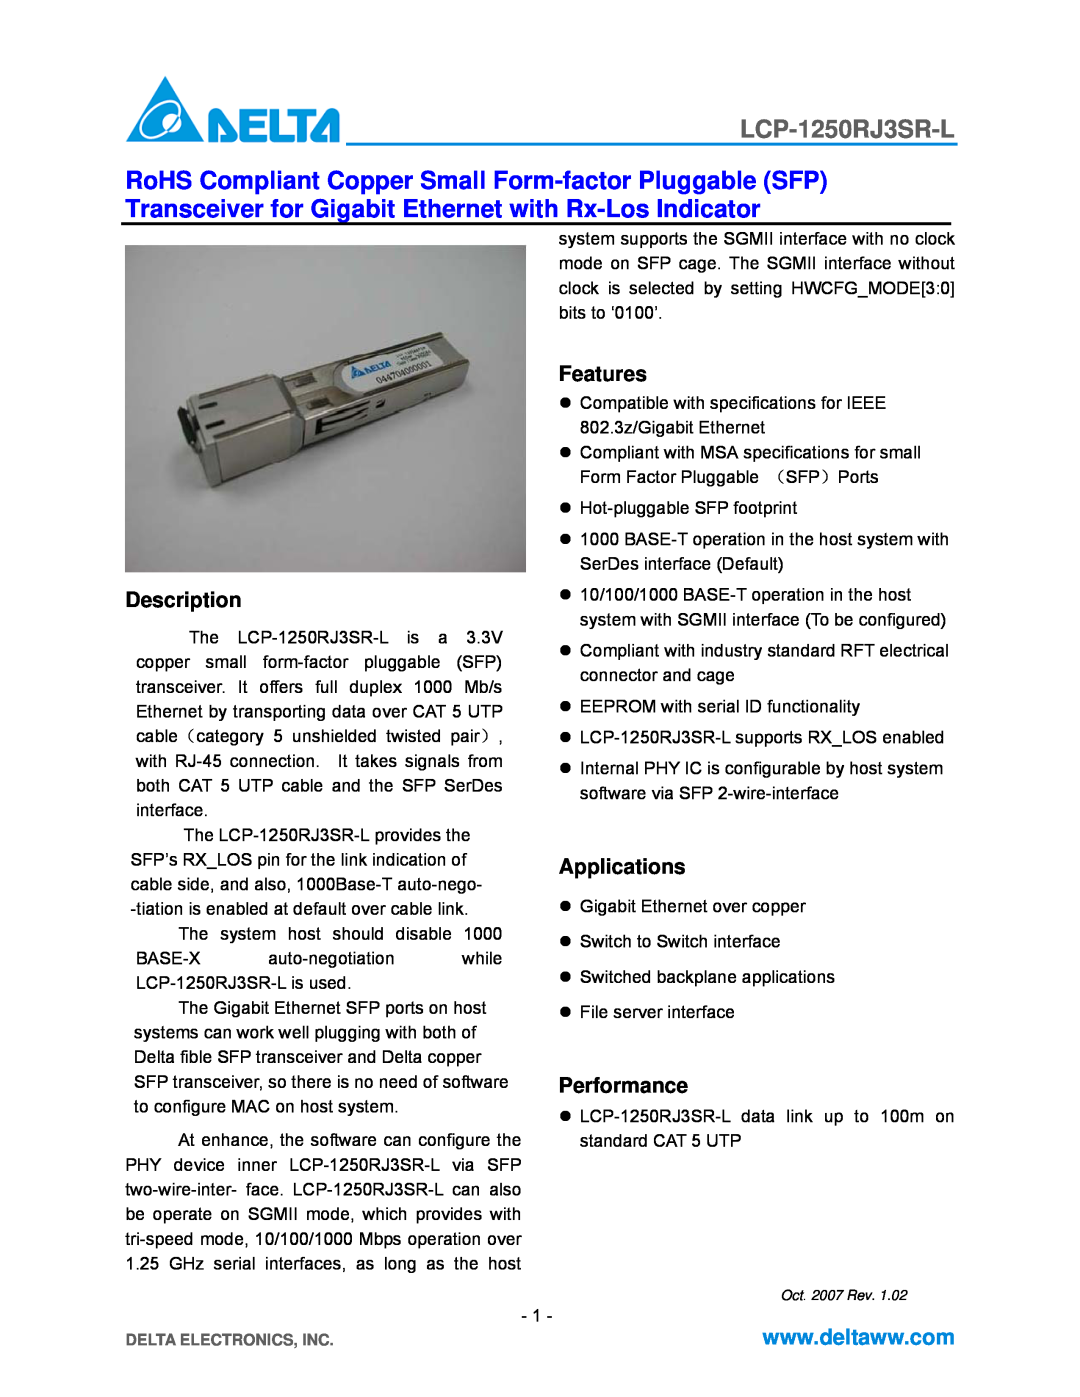 Delta Electronics LCP-1250RJ3SR-L specifications Description, Features, Applications, Performance 